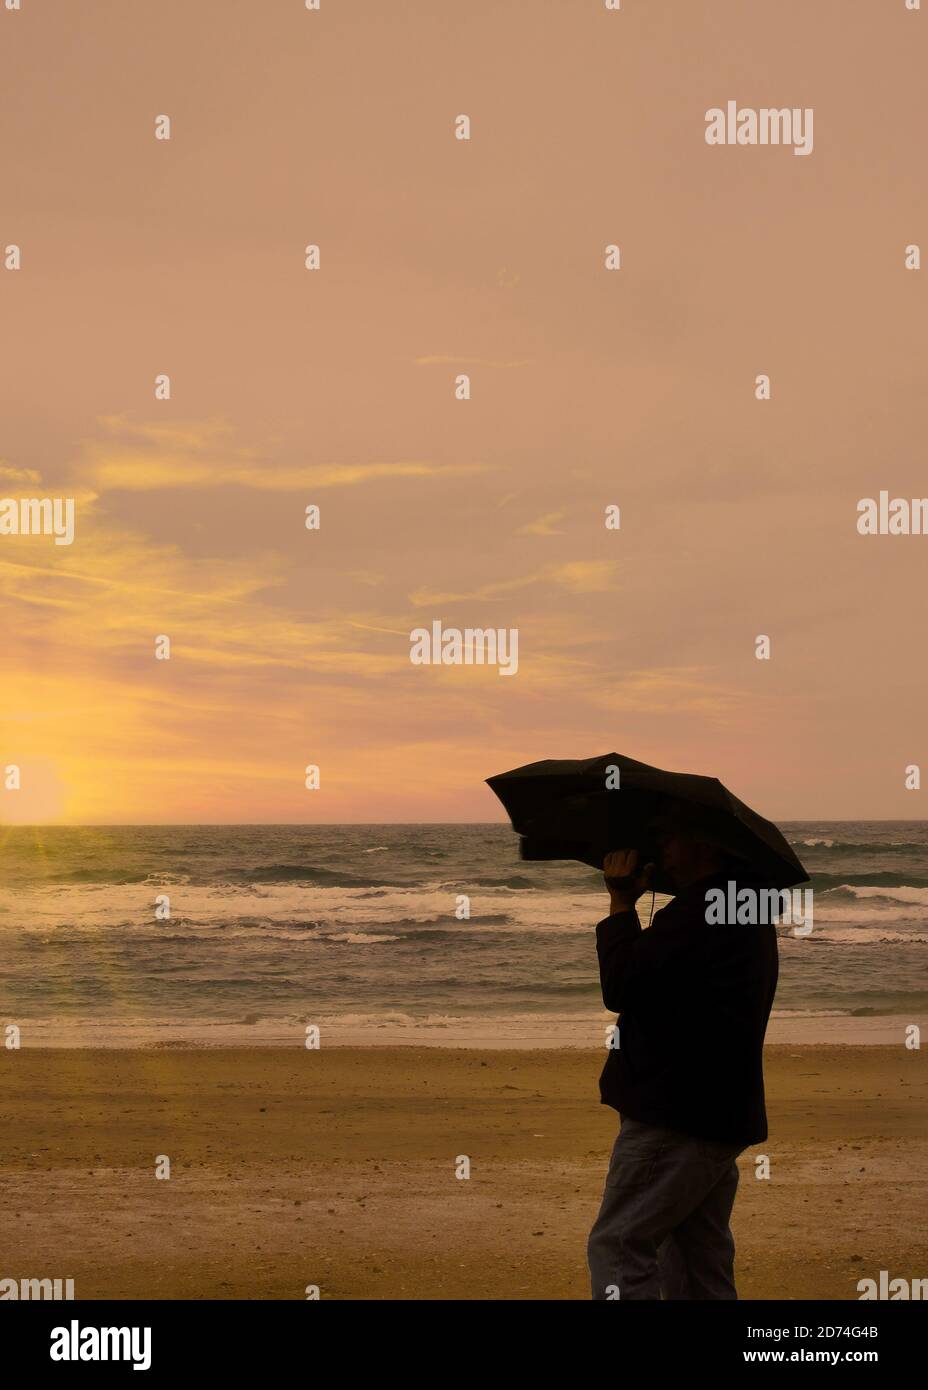 Silhouette de la personne sur la plage tenant un parasol Banque D'Images